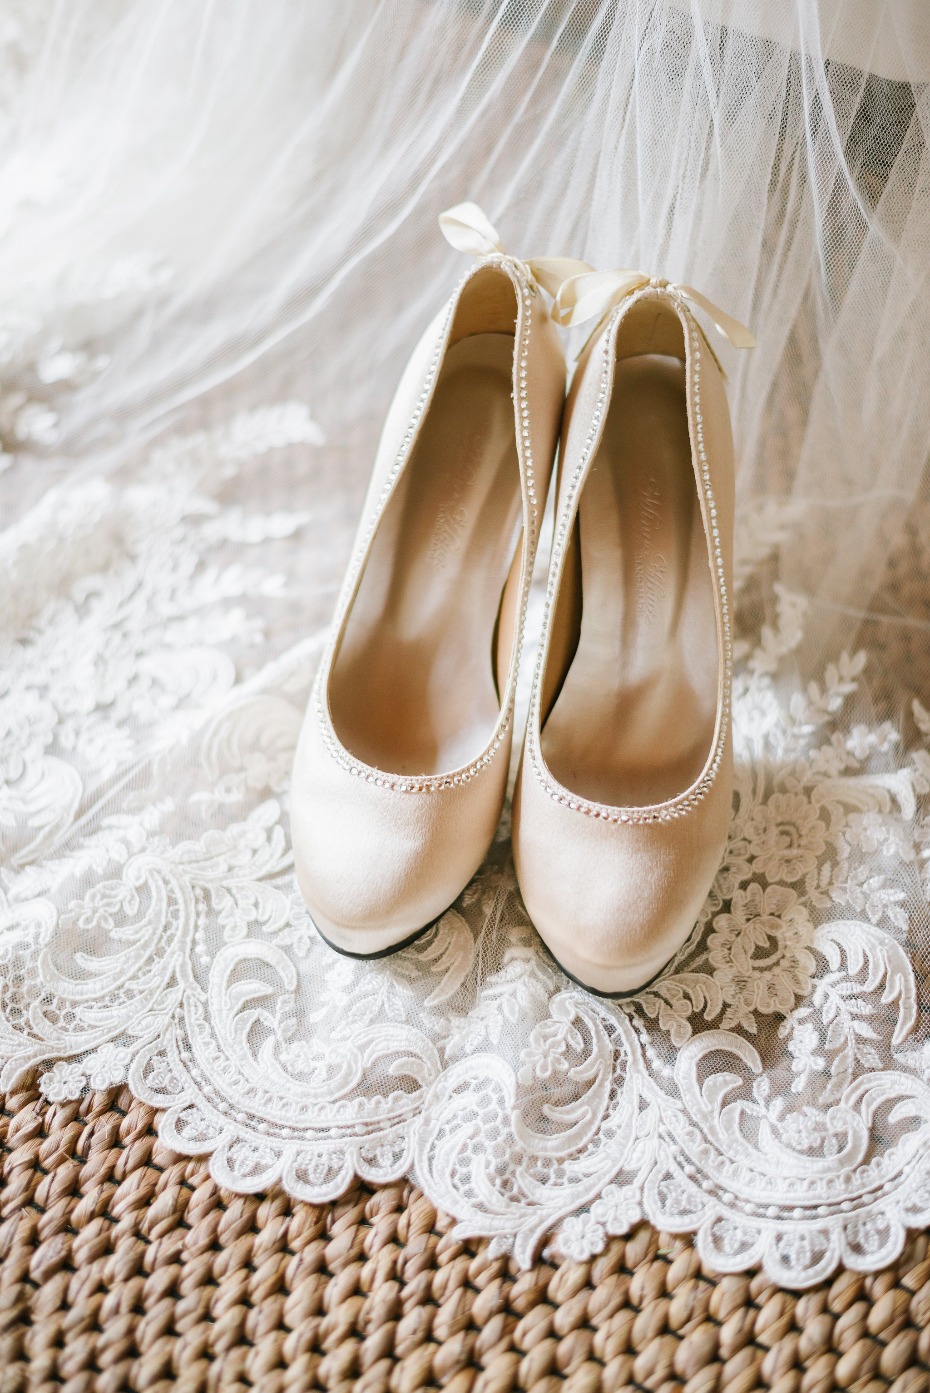 Pretty wedding heels